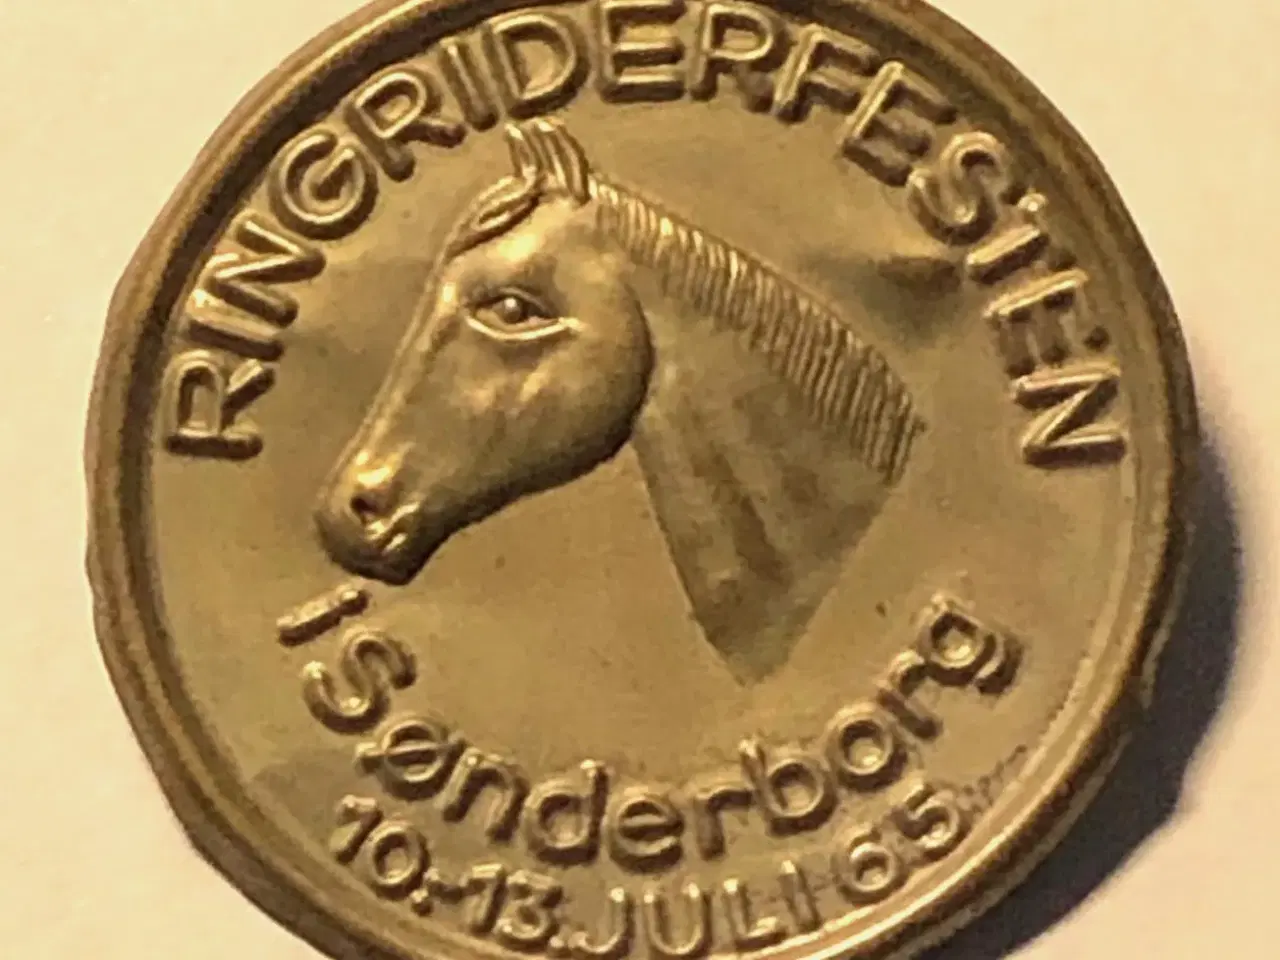 Billede 3 - Sønderborg Ringridnings historie